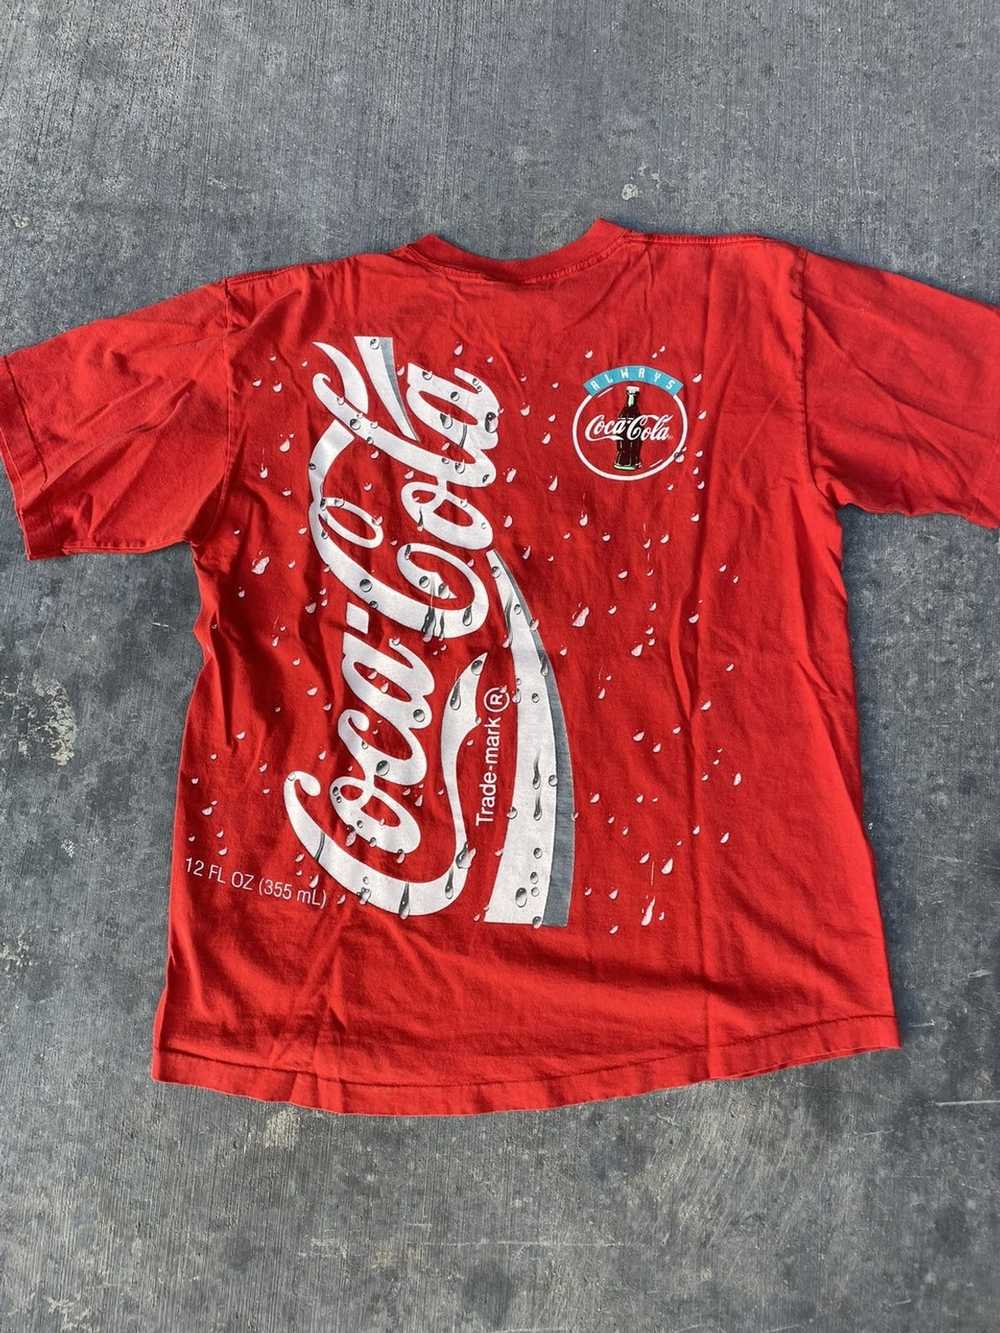 Coca Cola × Vintage Vintage 1994 Coca Cola T-Shirt - image 2